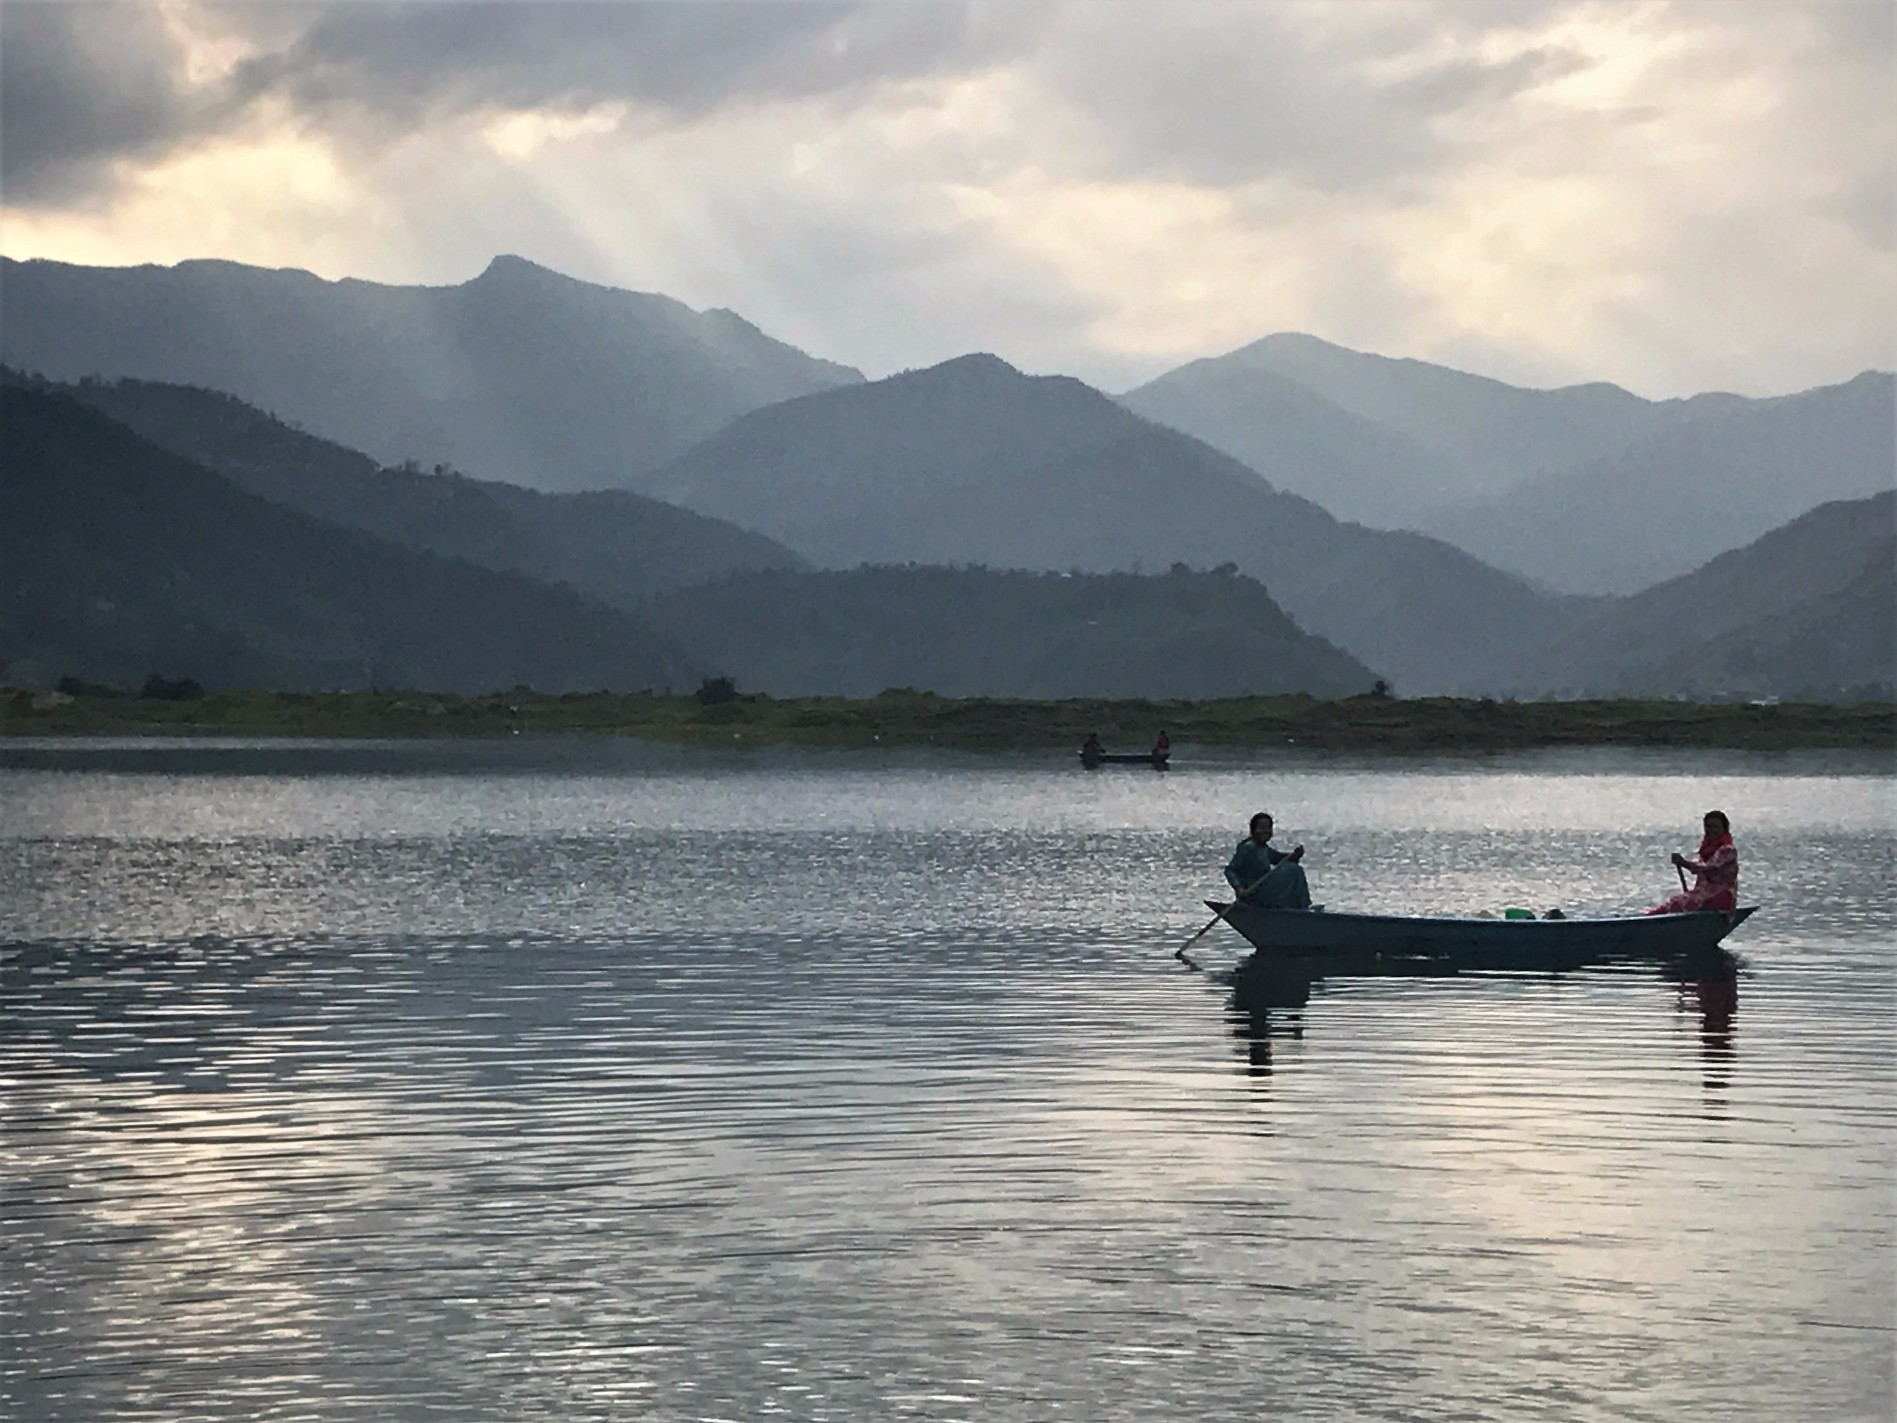 Two women fishing at sunset on Fewa Lake